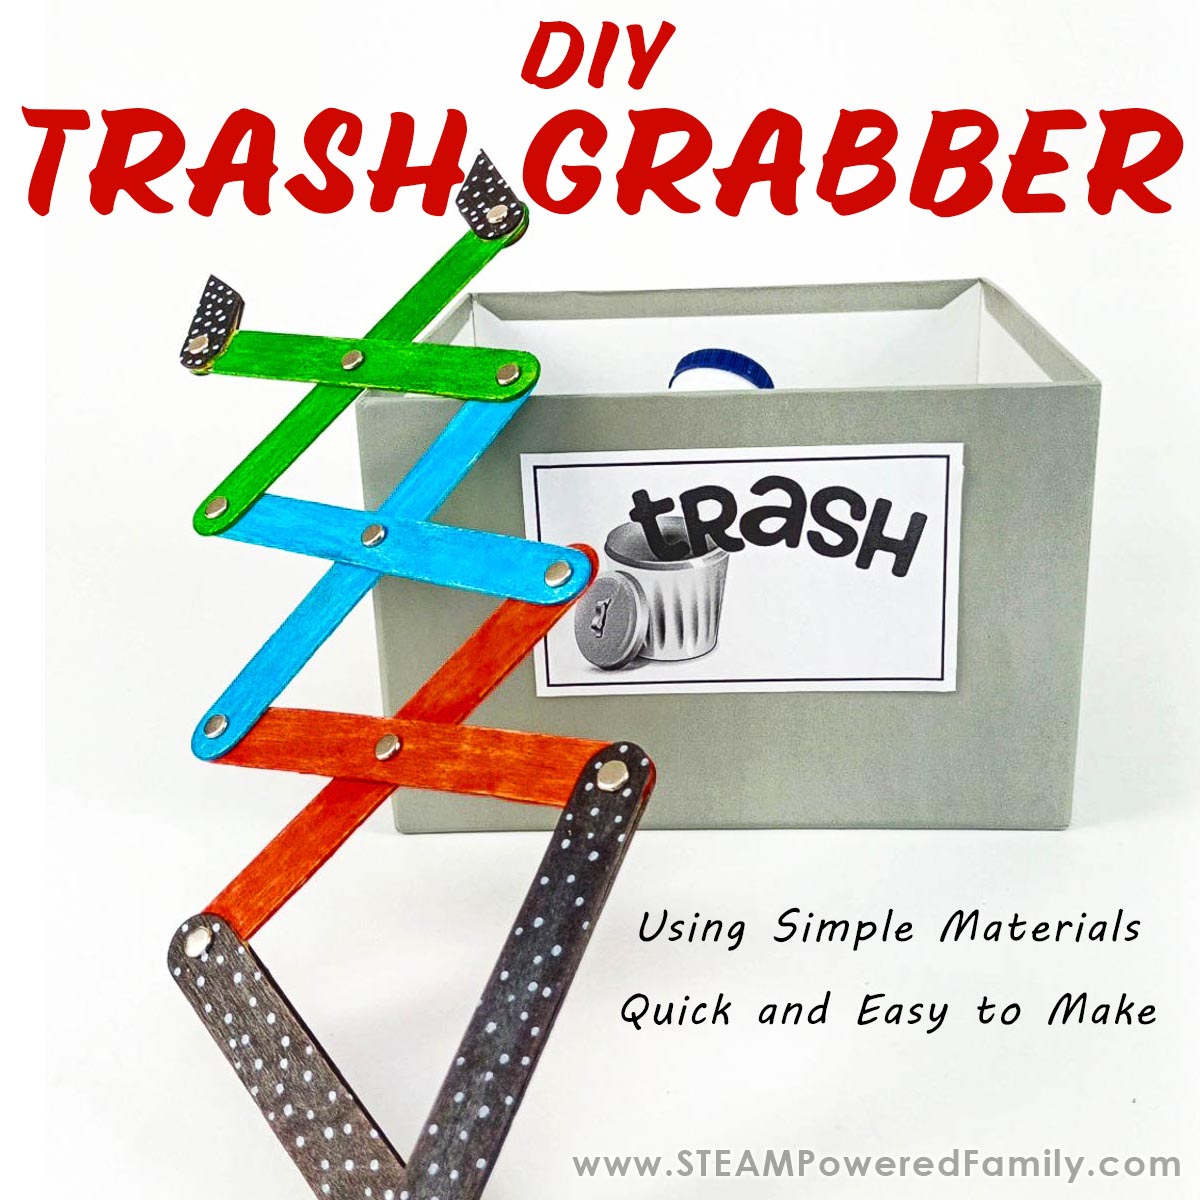 DIY Trash Grabber Project